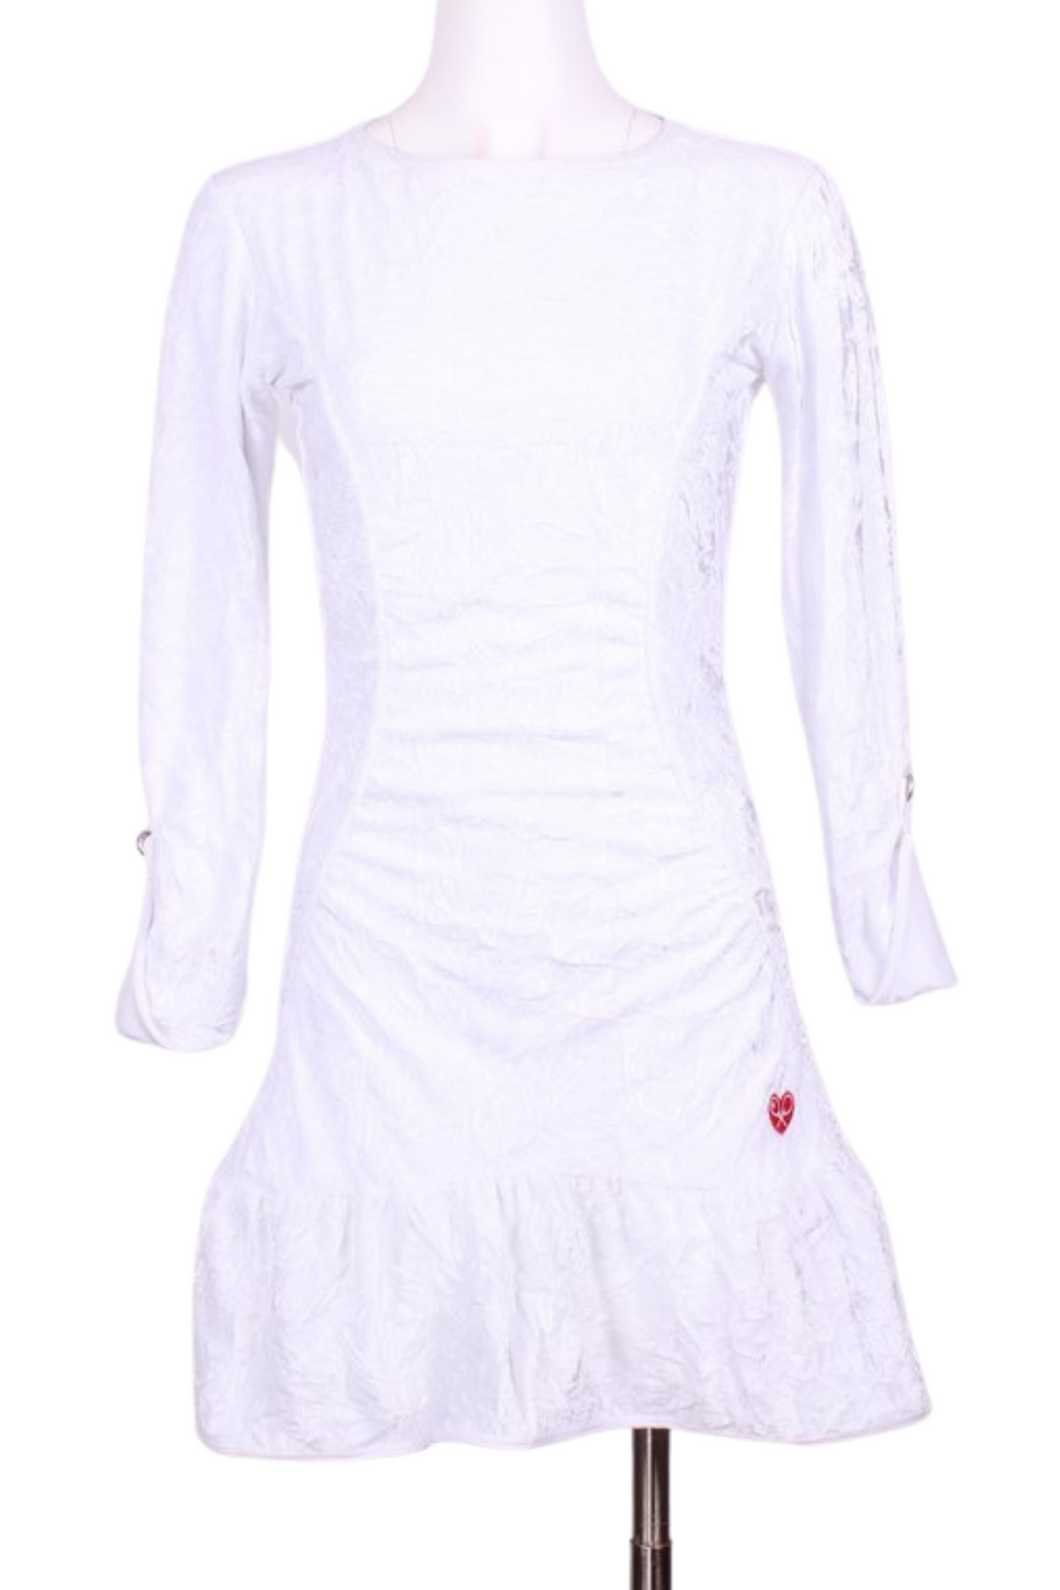 Long Sleeve Monroe Crushed White Velvet Tennis Dress - I LOVE MY DOUBLES PARTNER!!!